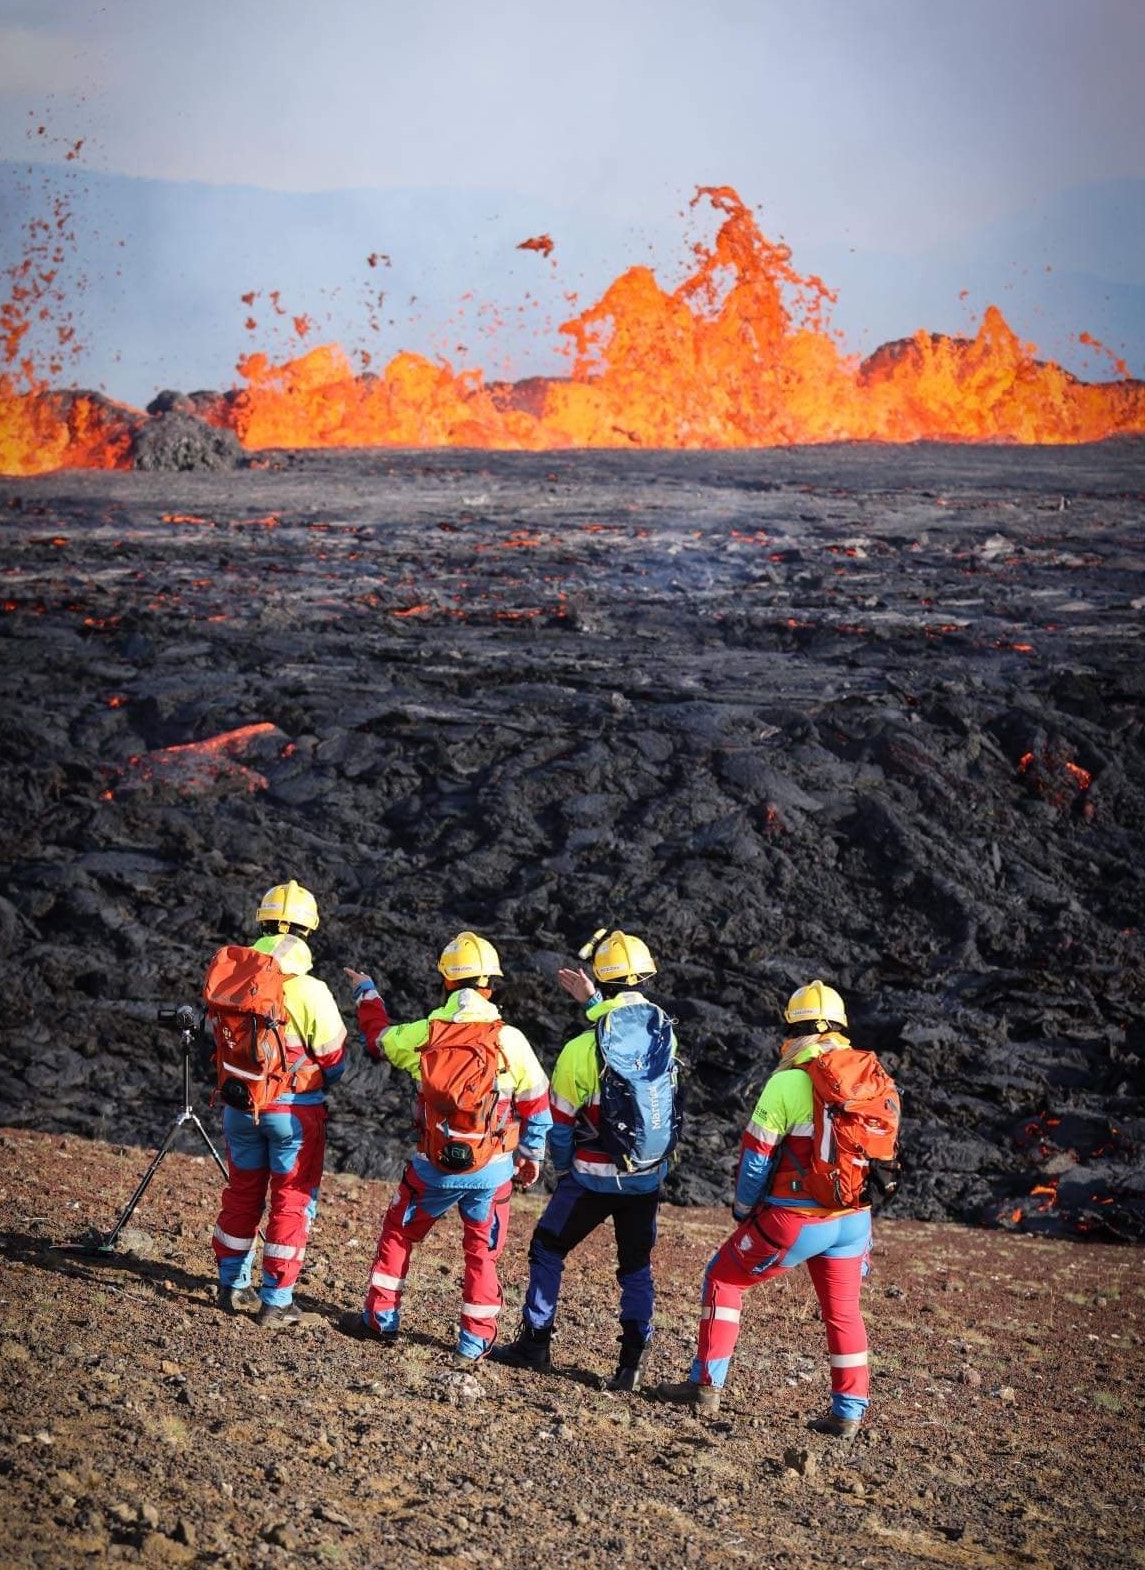 Czynny wulkan na Islandii – jak dojść do wulkanu, szlaki, bezpieczeństwo